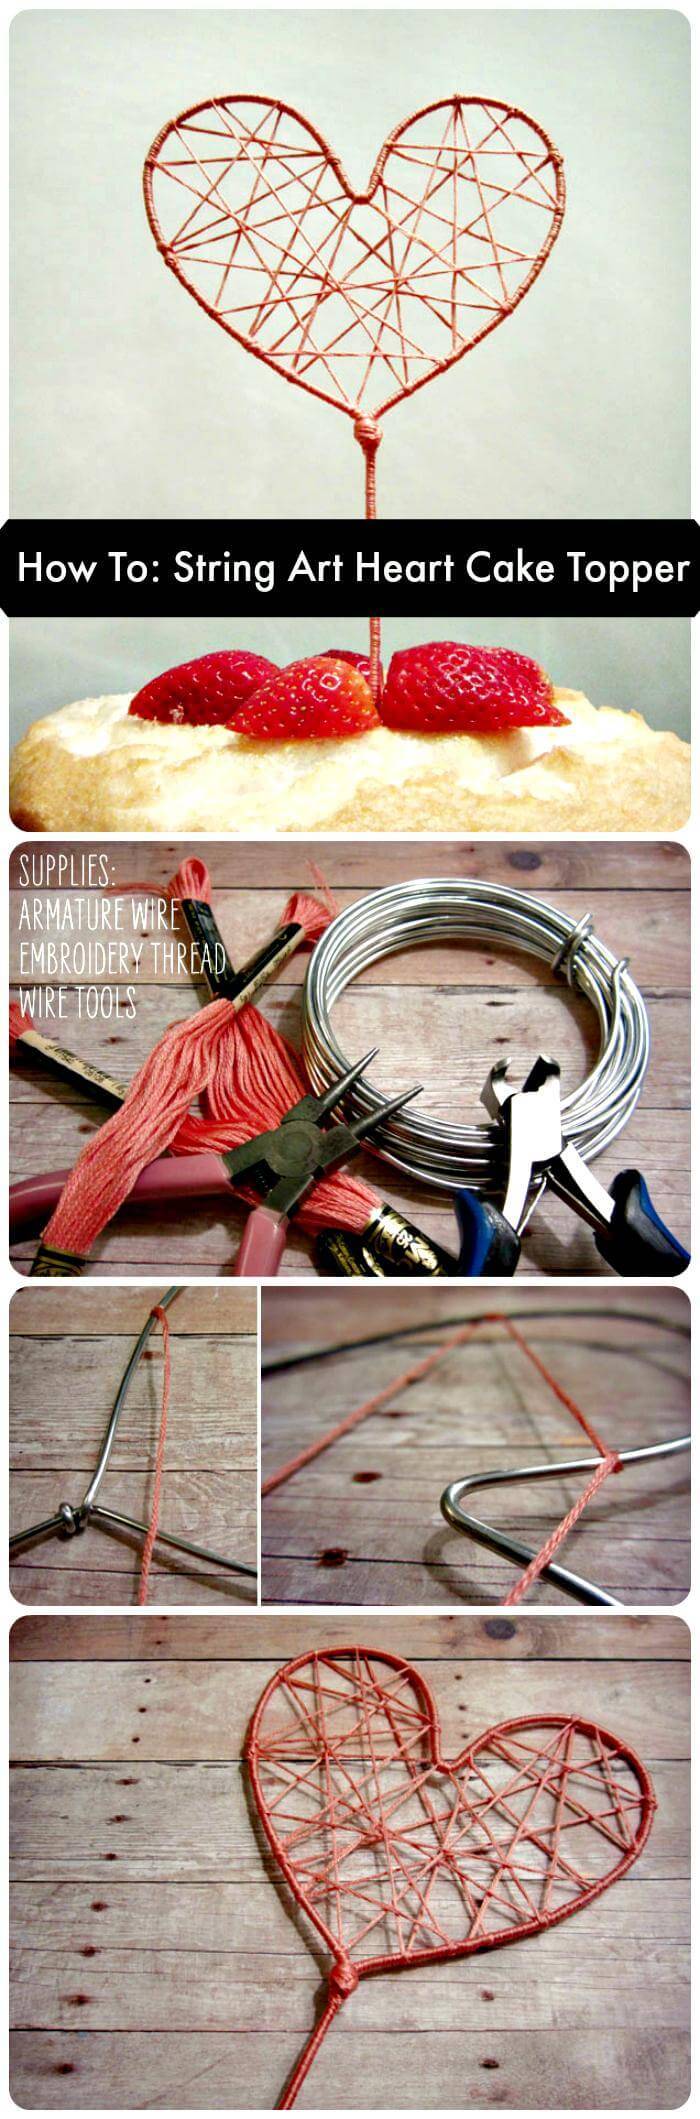 How To String Art Heart Cake Topper